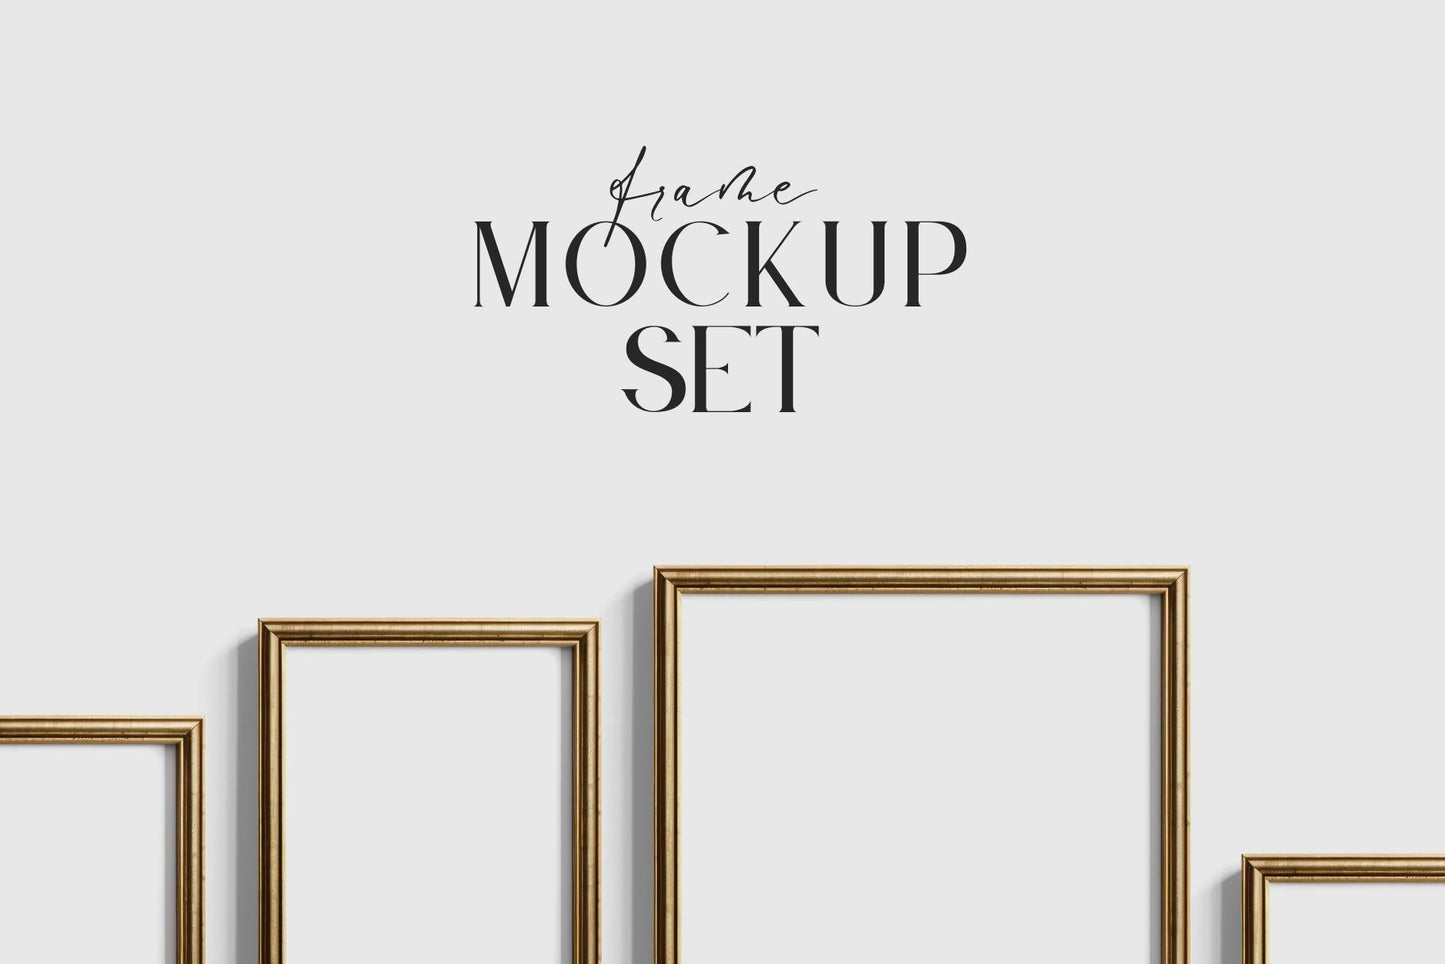 Gallery Wall Mockup | Metallic Frame Mockup Set of 8 Vertical Frames 5:7, 3:4 | Vintage Gold Frame Mockup Set | PSD Template + Transparent PNG Files